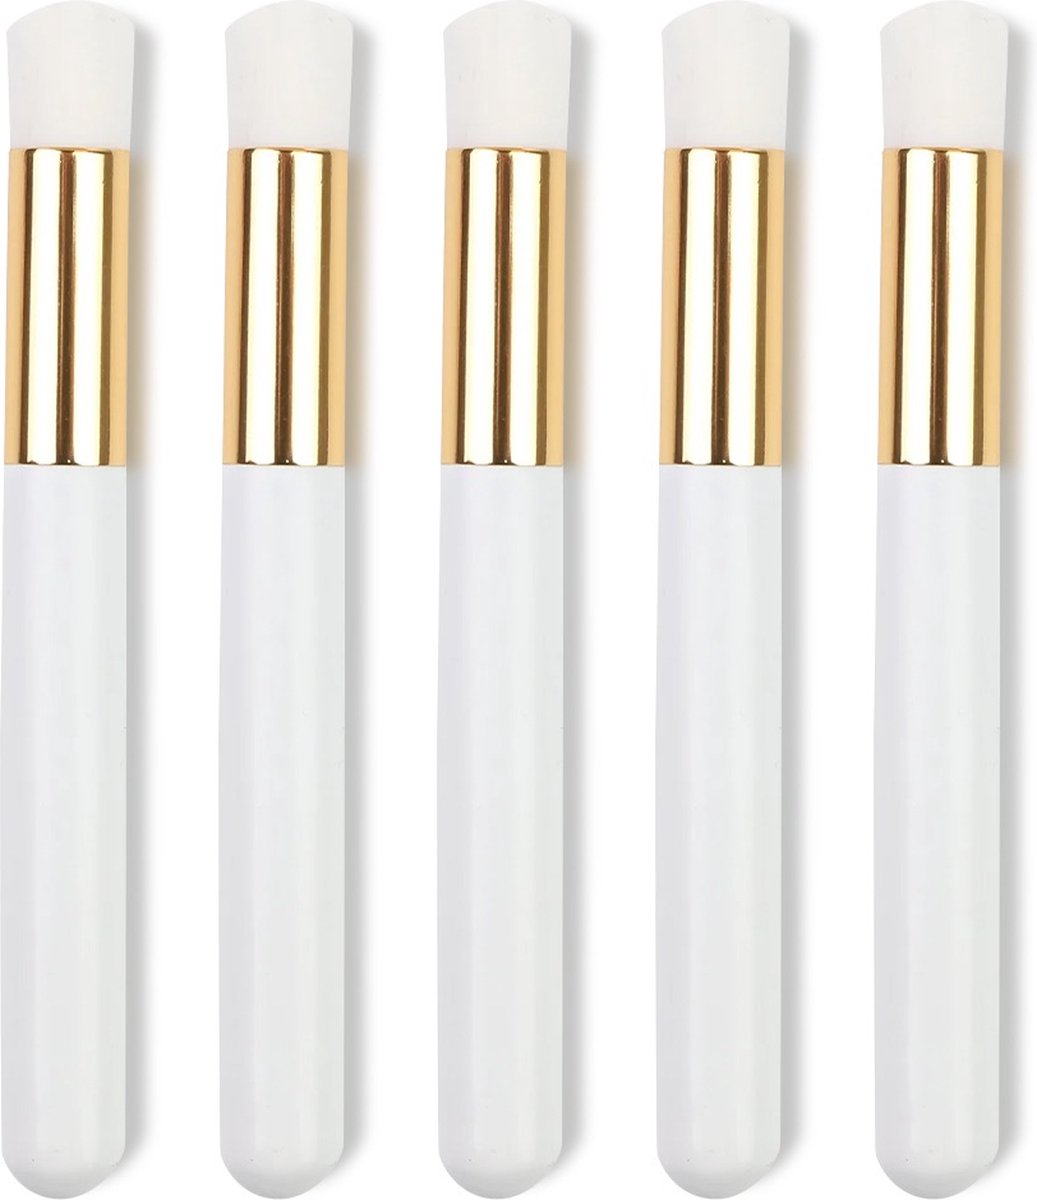 Lavertu Cosmetics - Cleaning Brush - Wimperextension brush - Zachte haren - Voor reiningen van wimpers - Set van 5